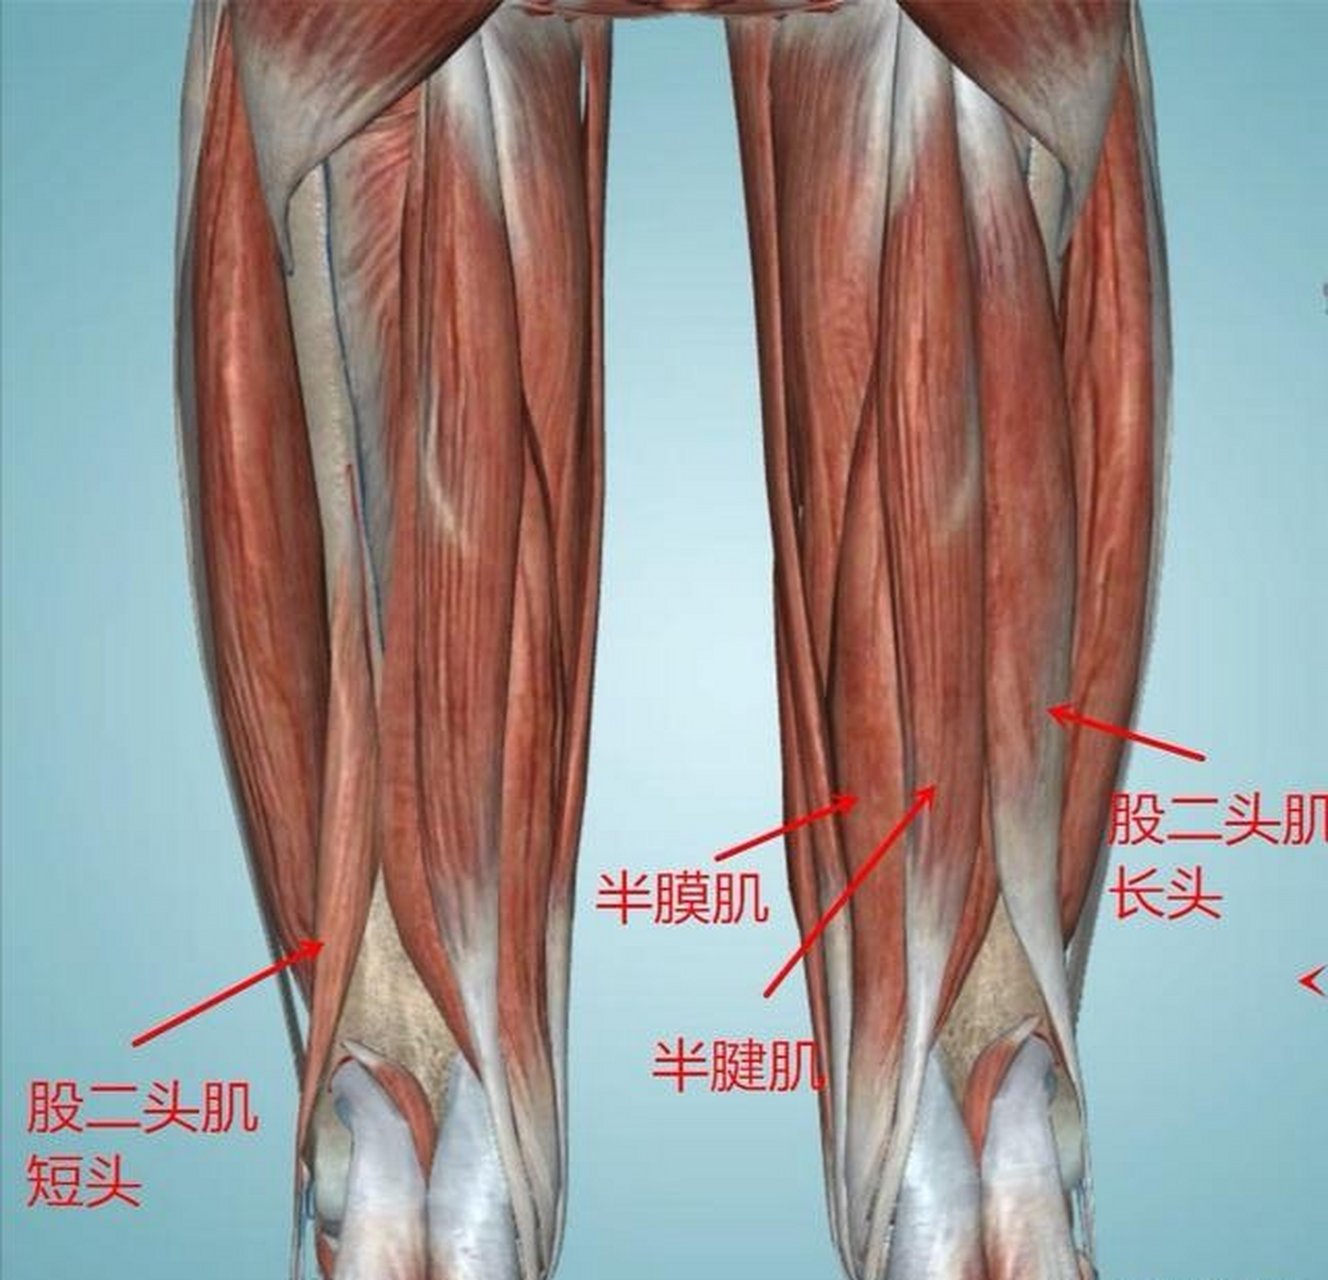 腿部后侧肌肉实际上叫腘绳肌,组成腘绳肌的肌肉有半腱肌,半膜肌,股二